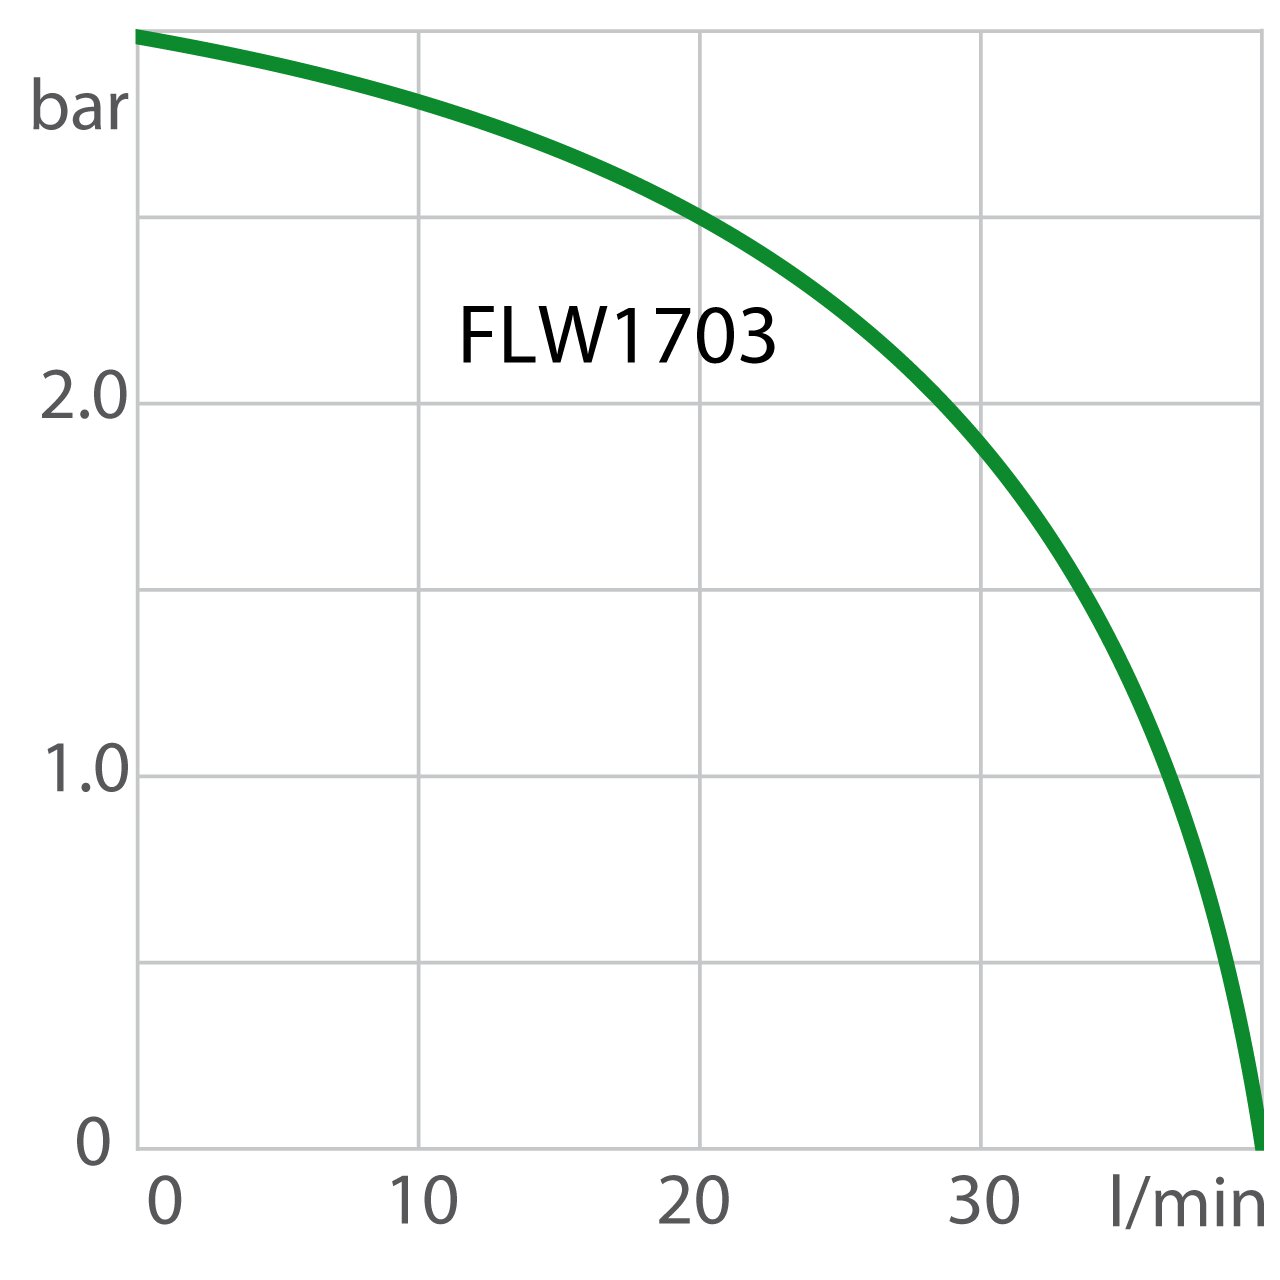 Puissance de la pompe du recirculating cooler FLW1703